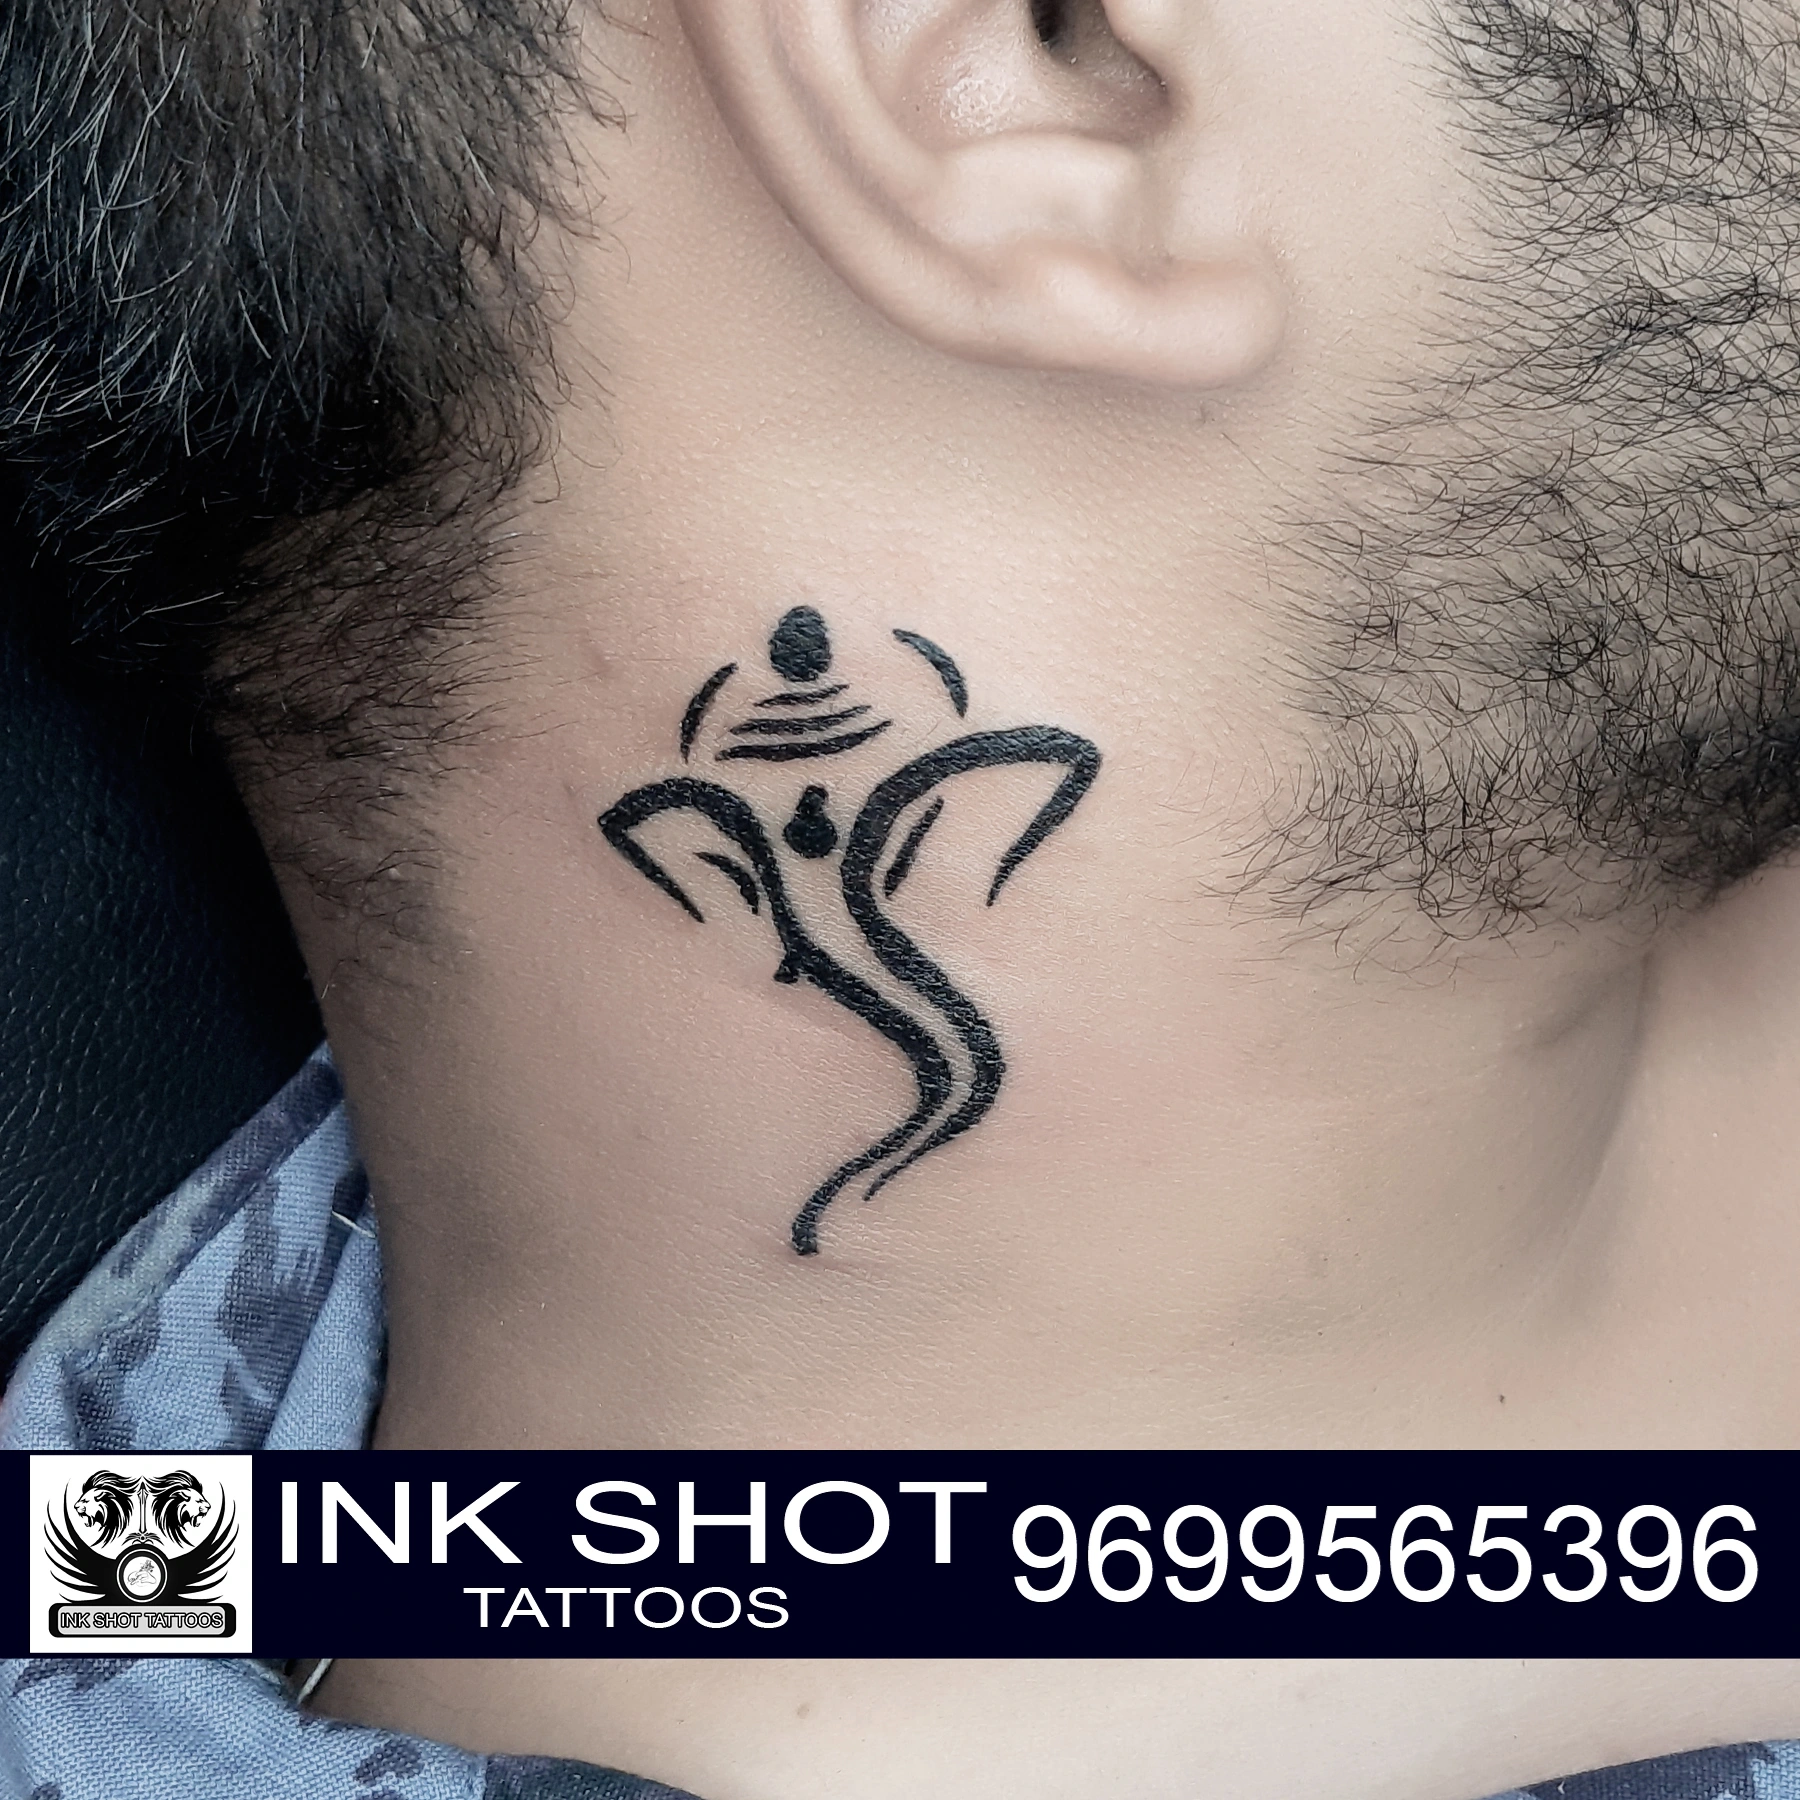 Ink shot tattoos in Wadarvadi, Pune-411016 | Sulekha Pune